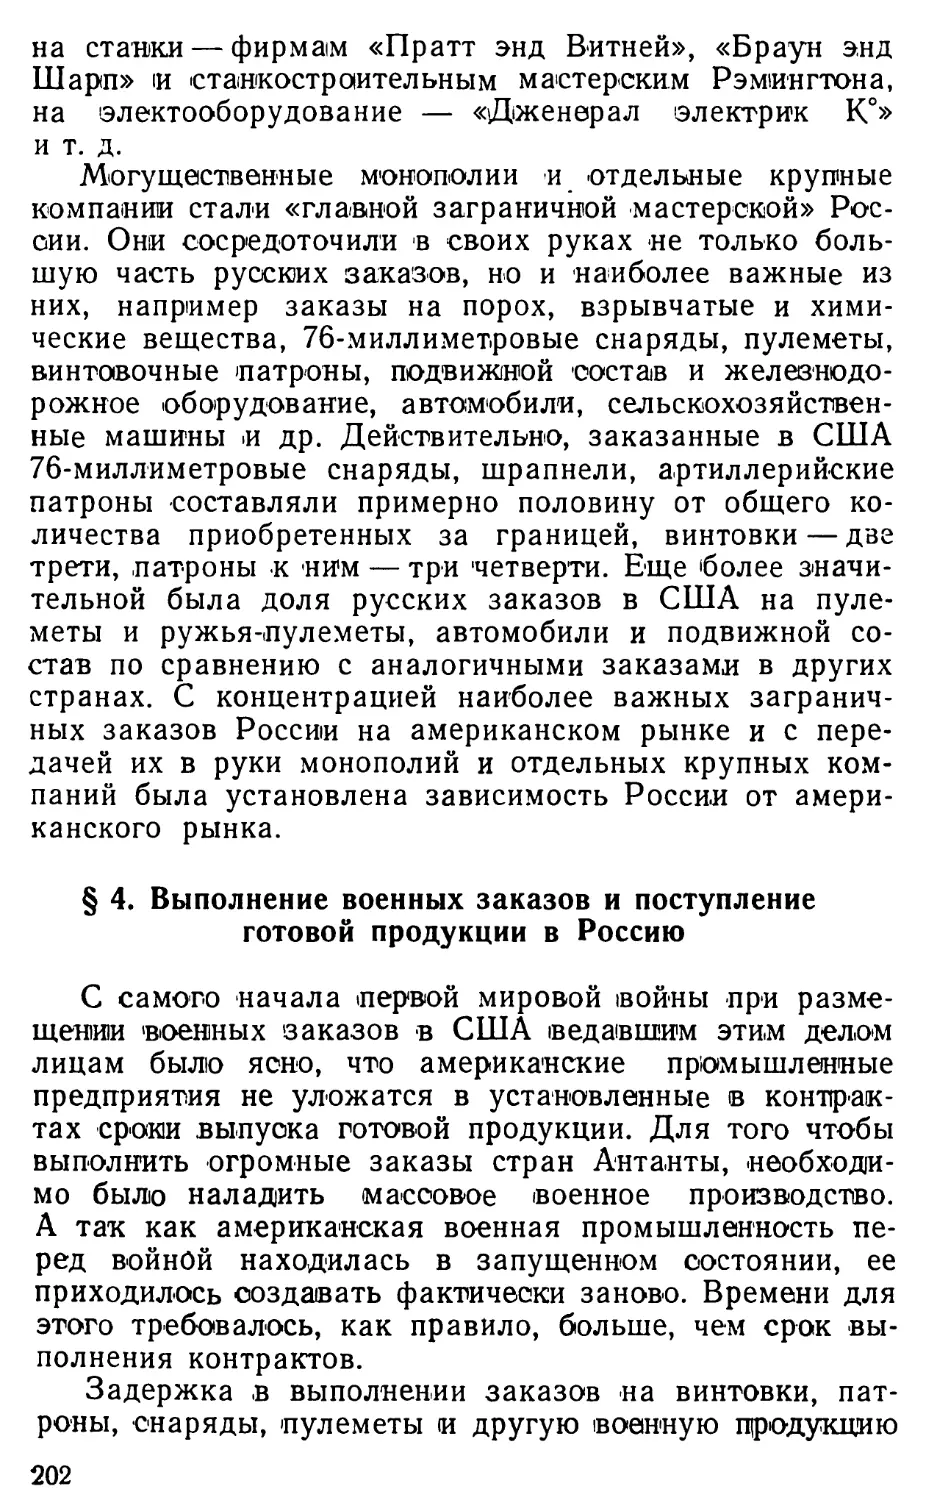 § 4. Выполнение военных заказов и поступление готовой продукции в Россию